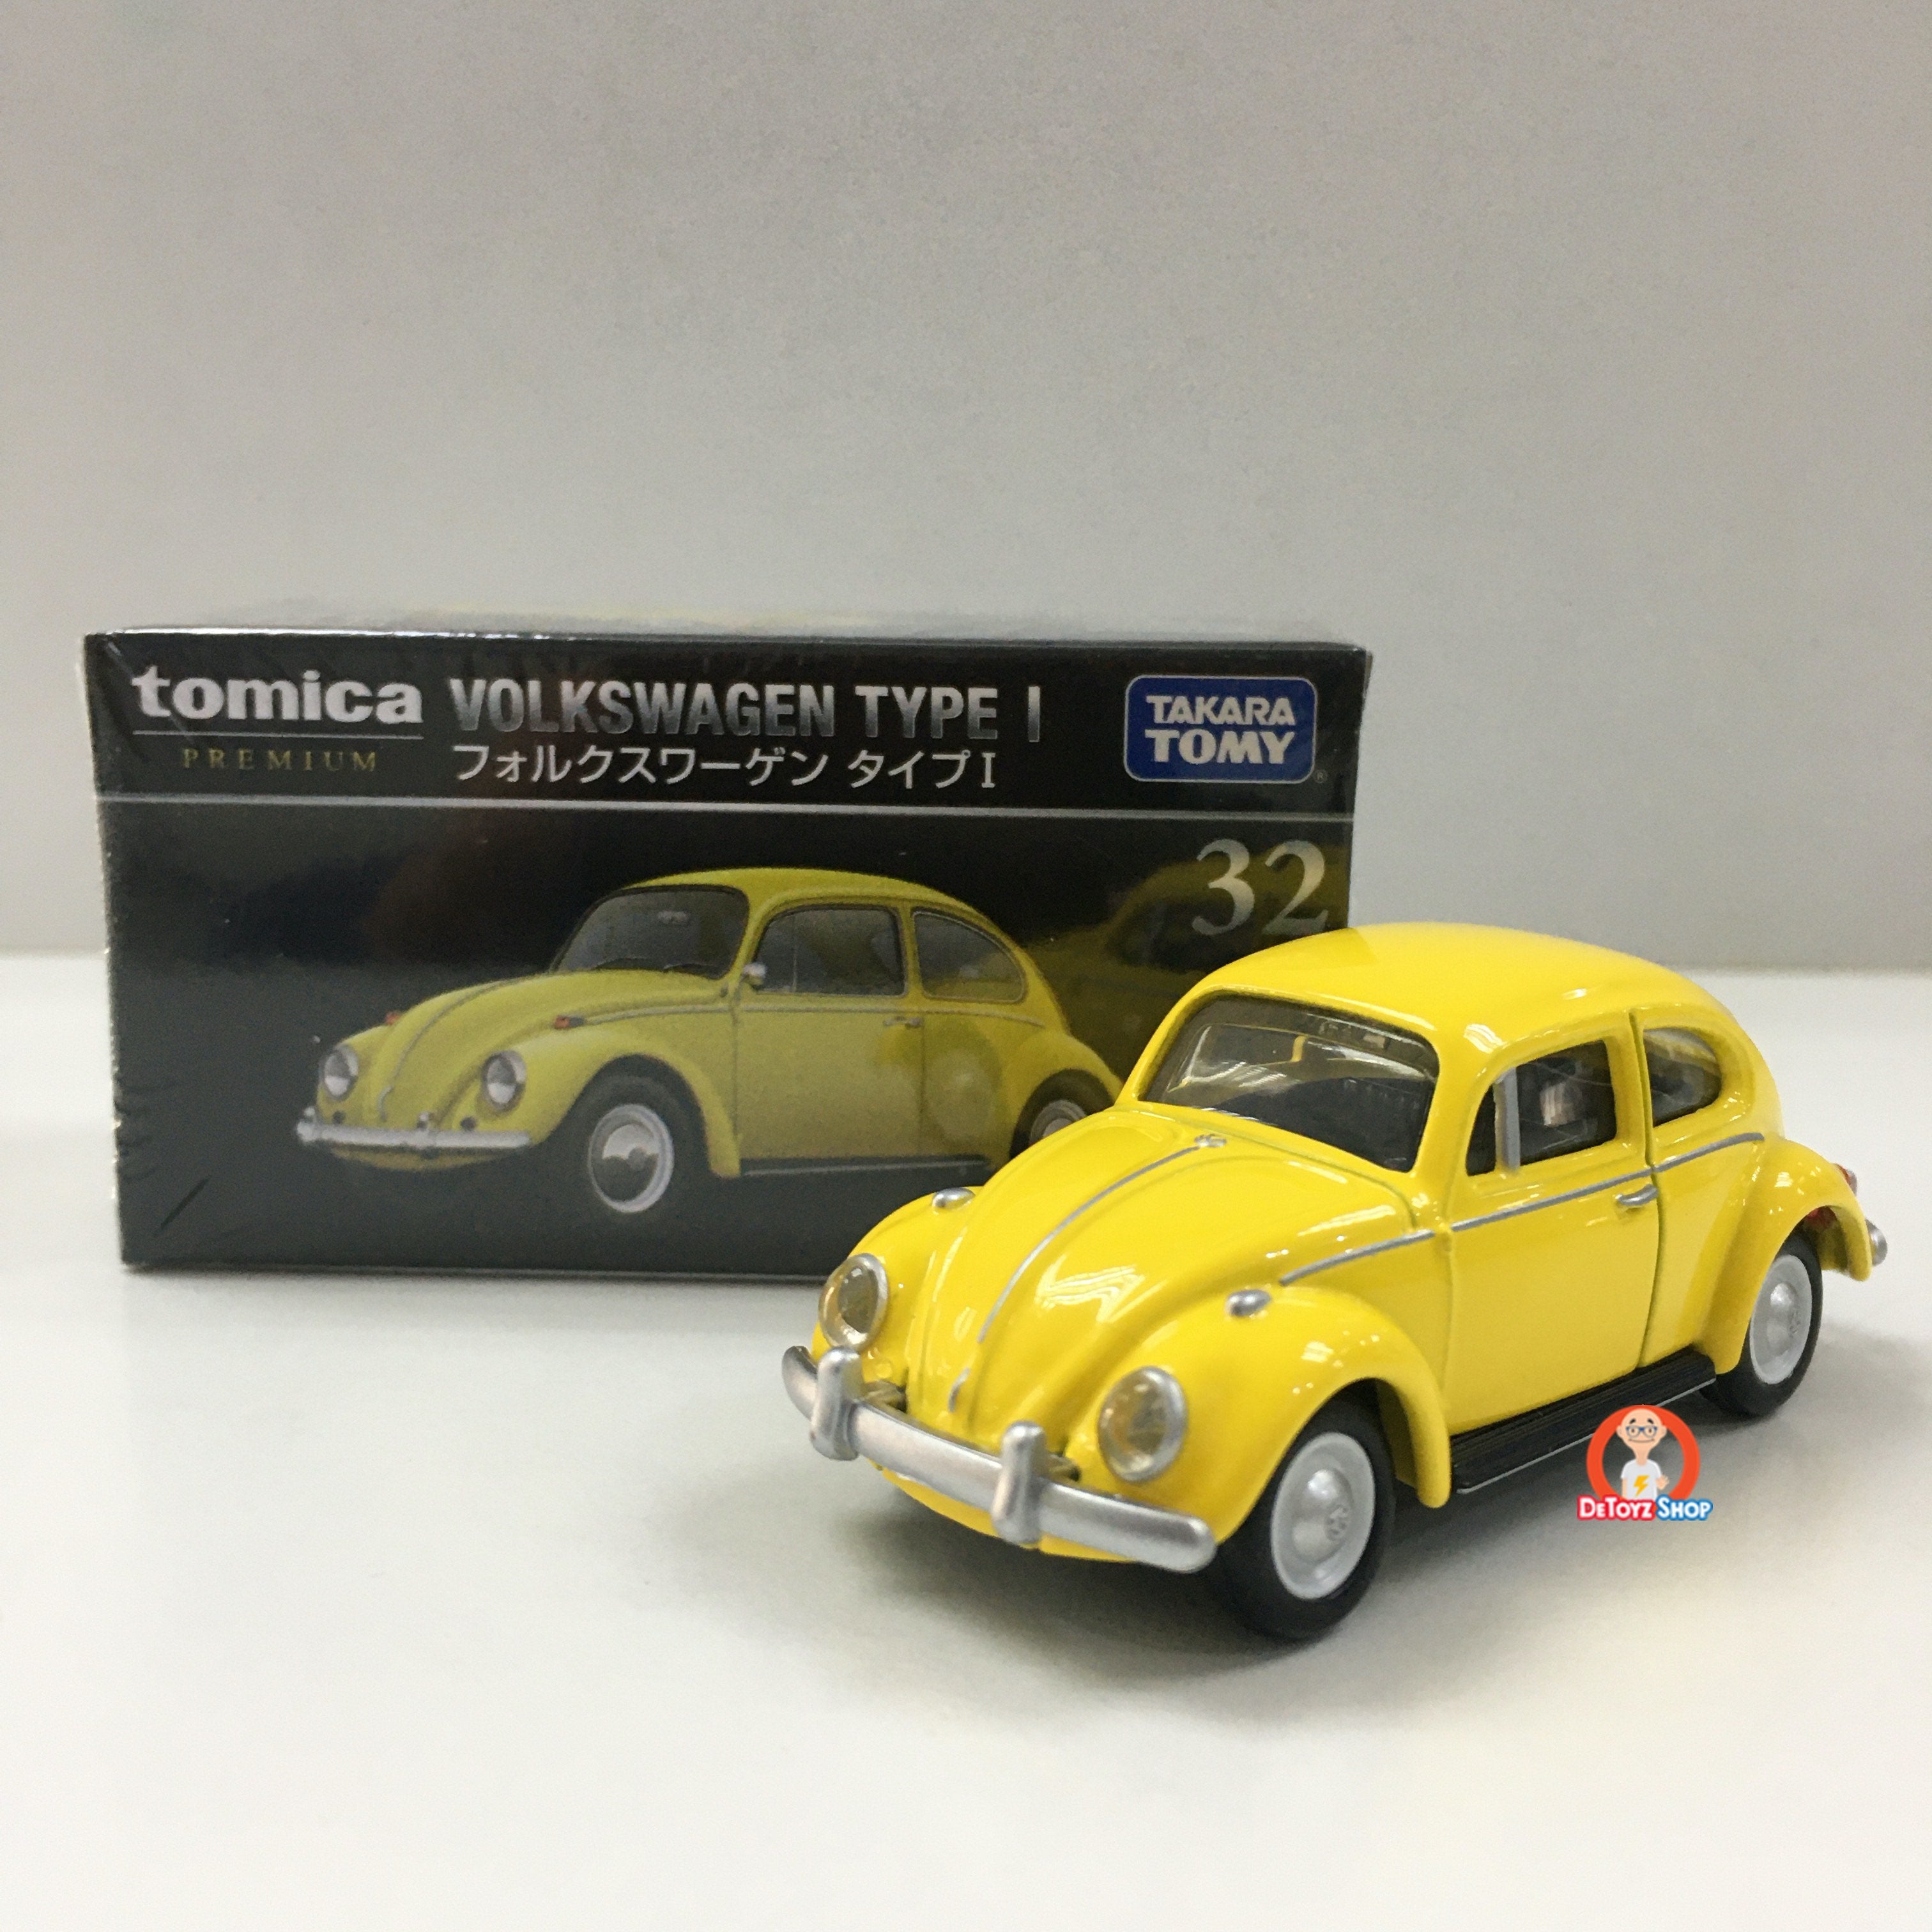 Tomica Premium 32 Volkswagen Beetle